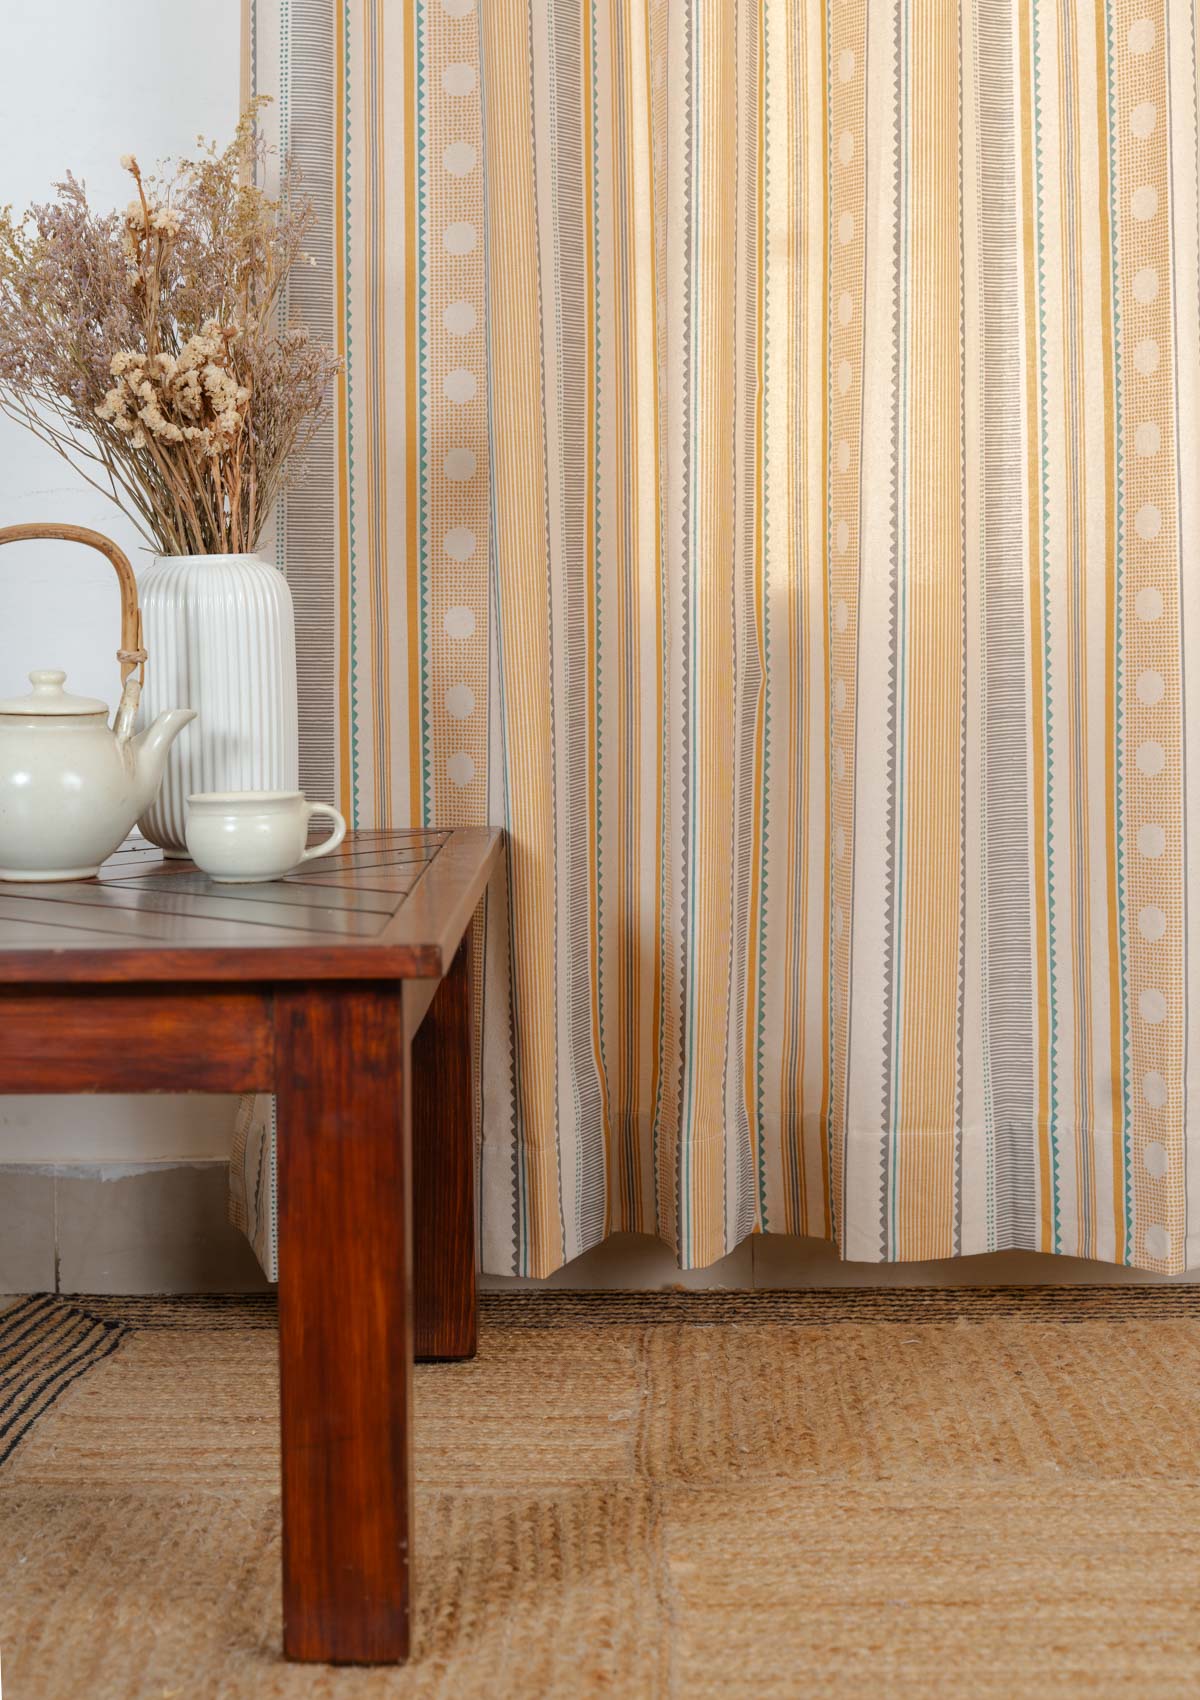 Buru 100% cotton boho curtain for living room - Room darkening - Mustard - Single